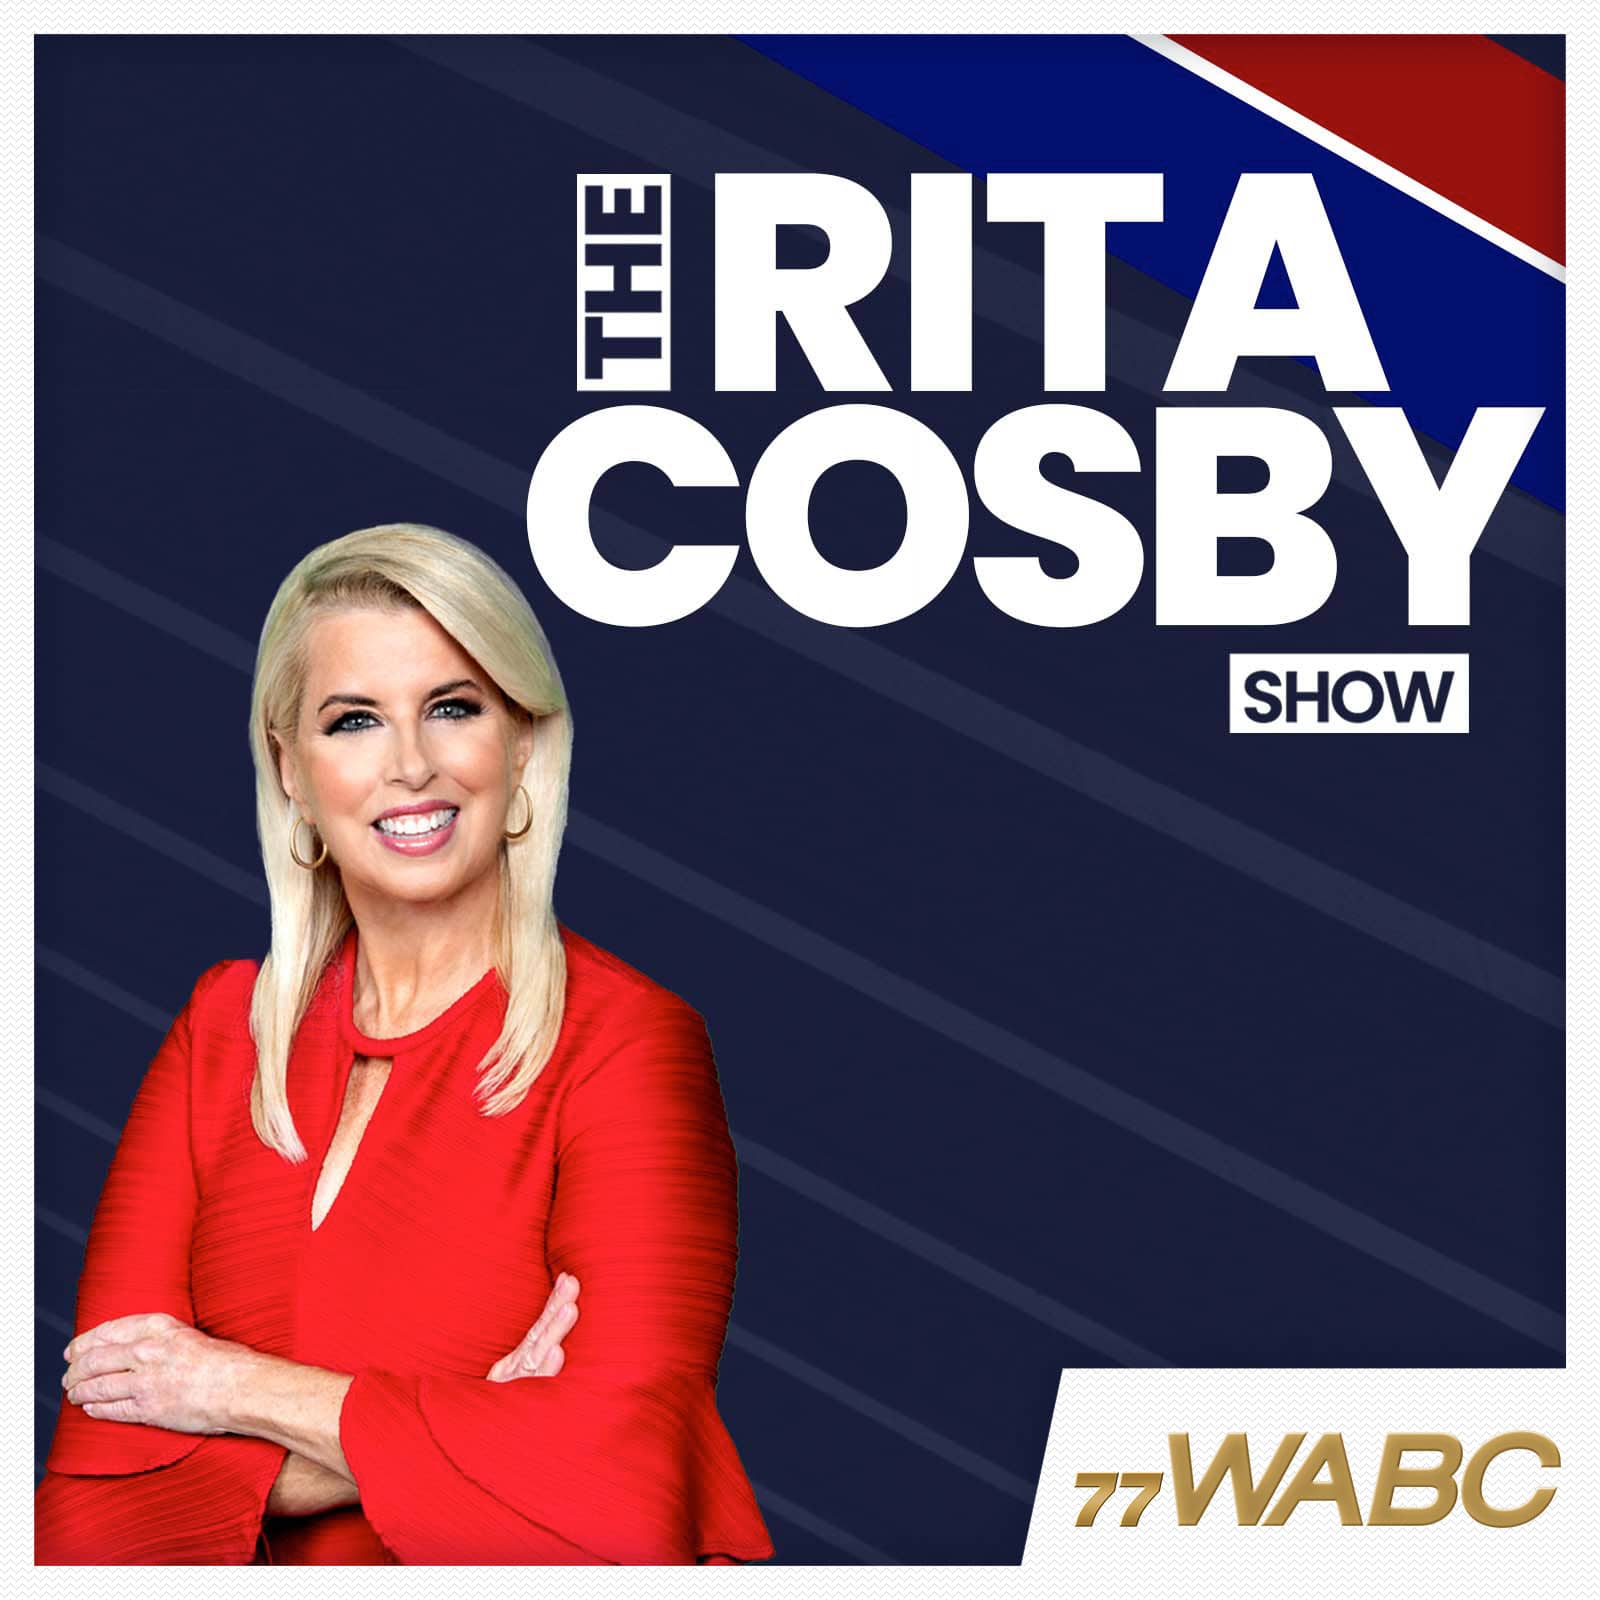 rita-cosby-podcast-new-logo-255